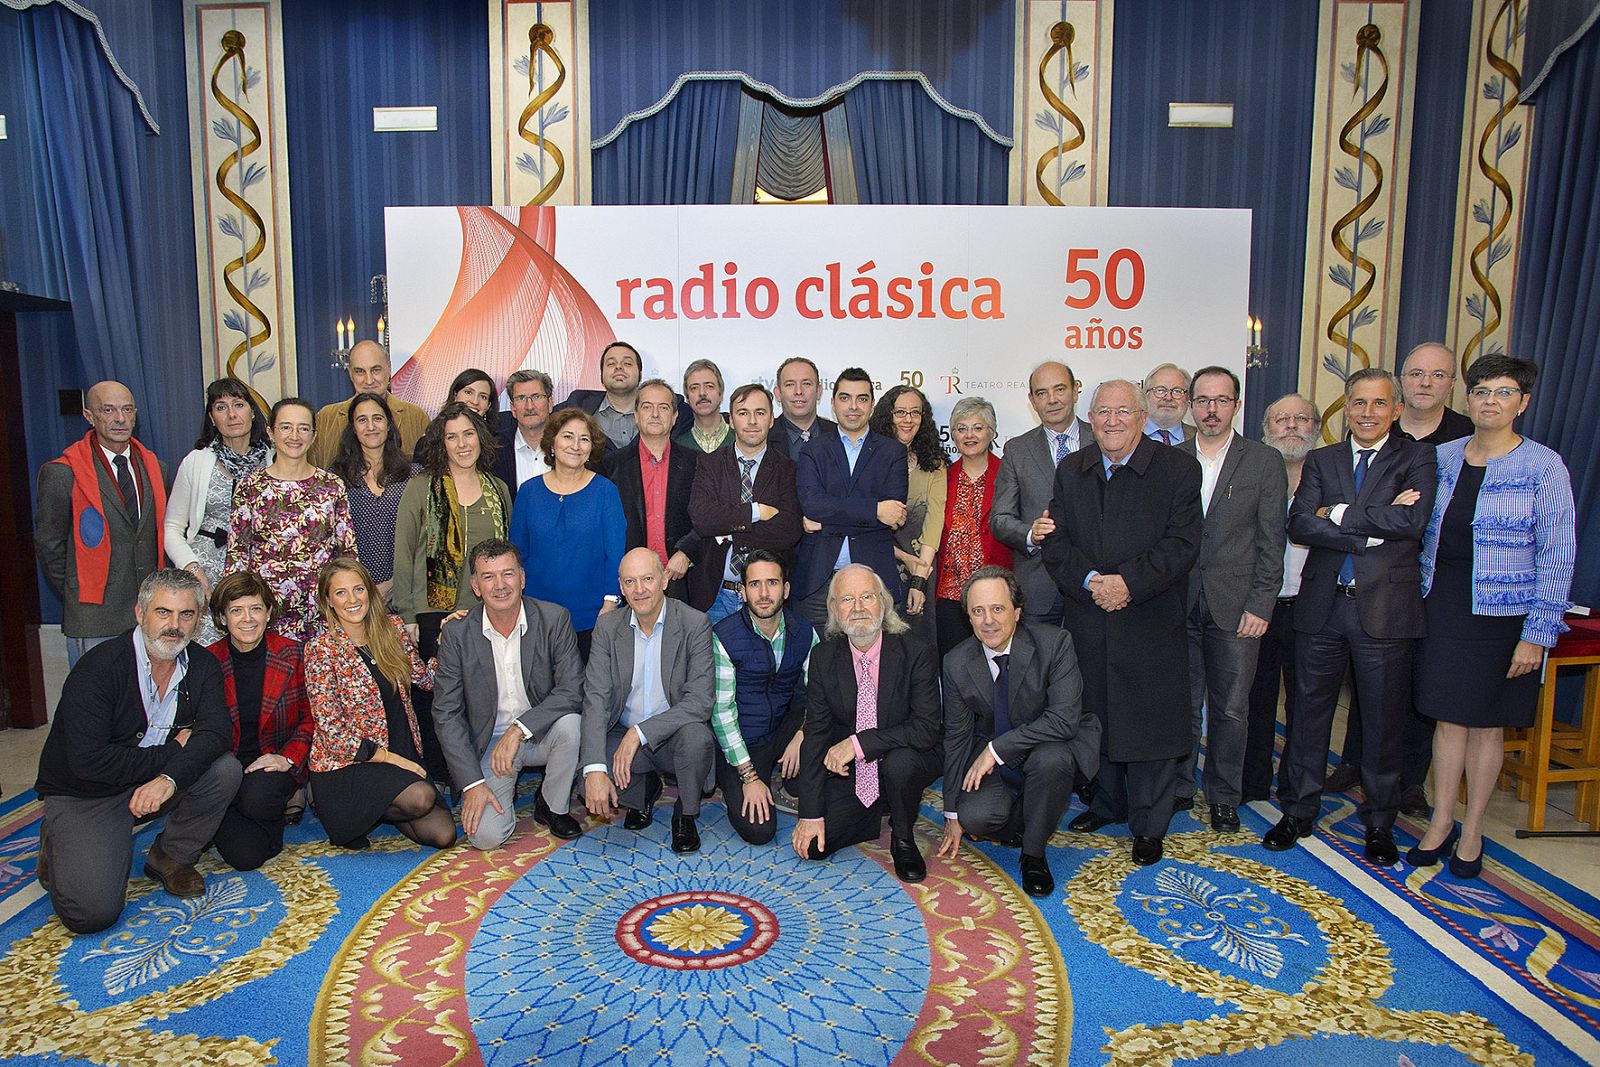 Presentadores, colaboradores y antiguos directores han asistido a la presentación de Radio Clásica en el Teatro Real de Madrid